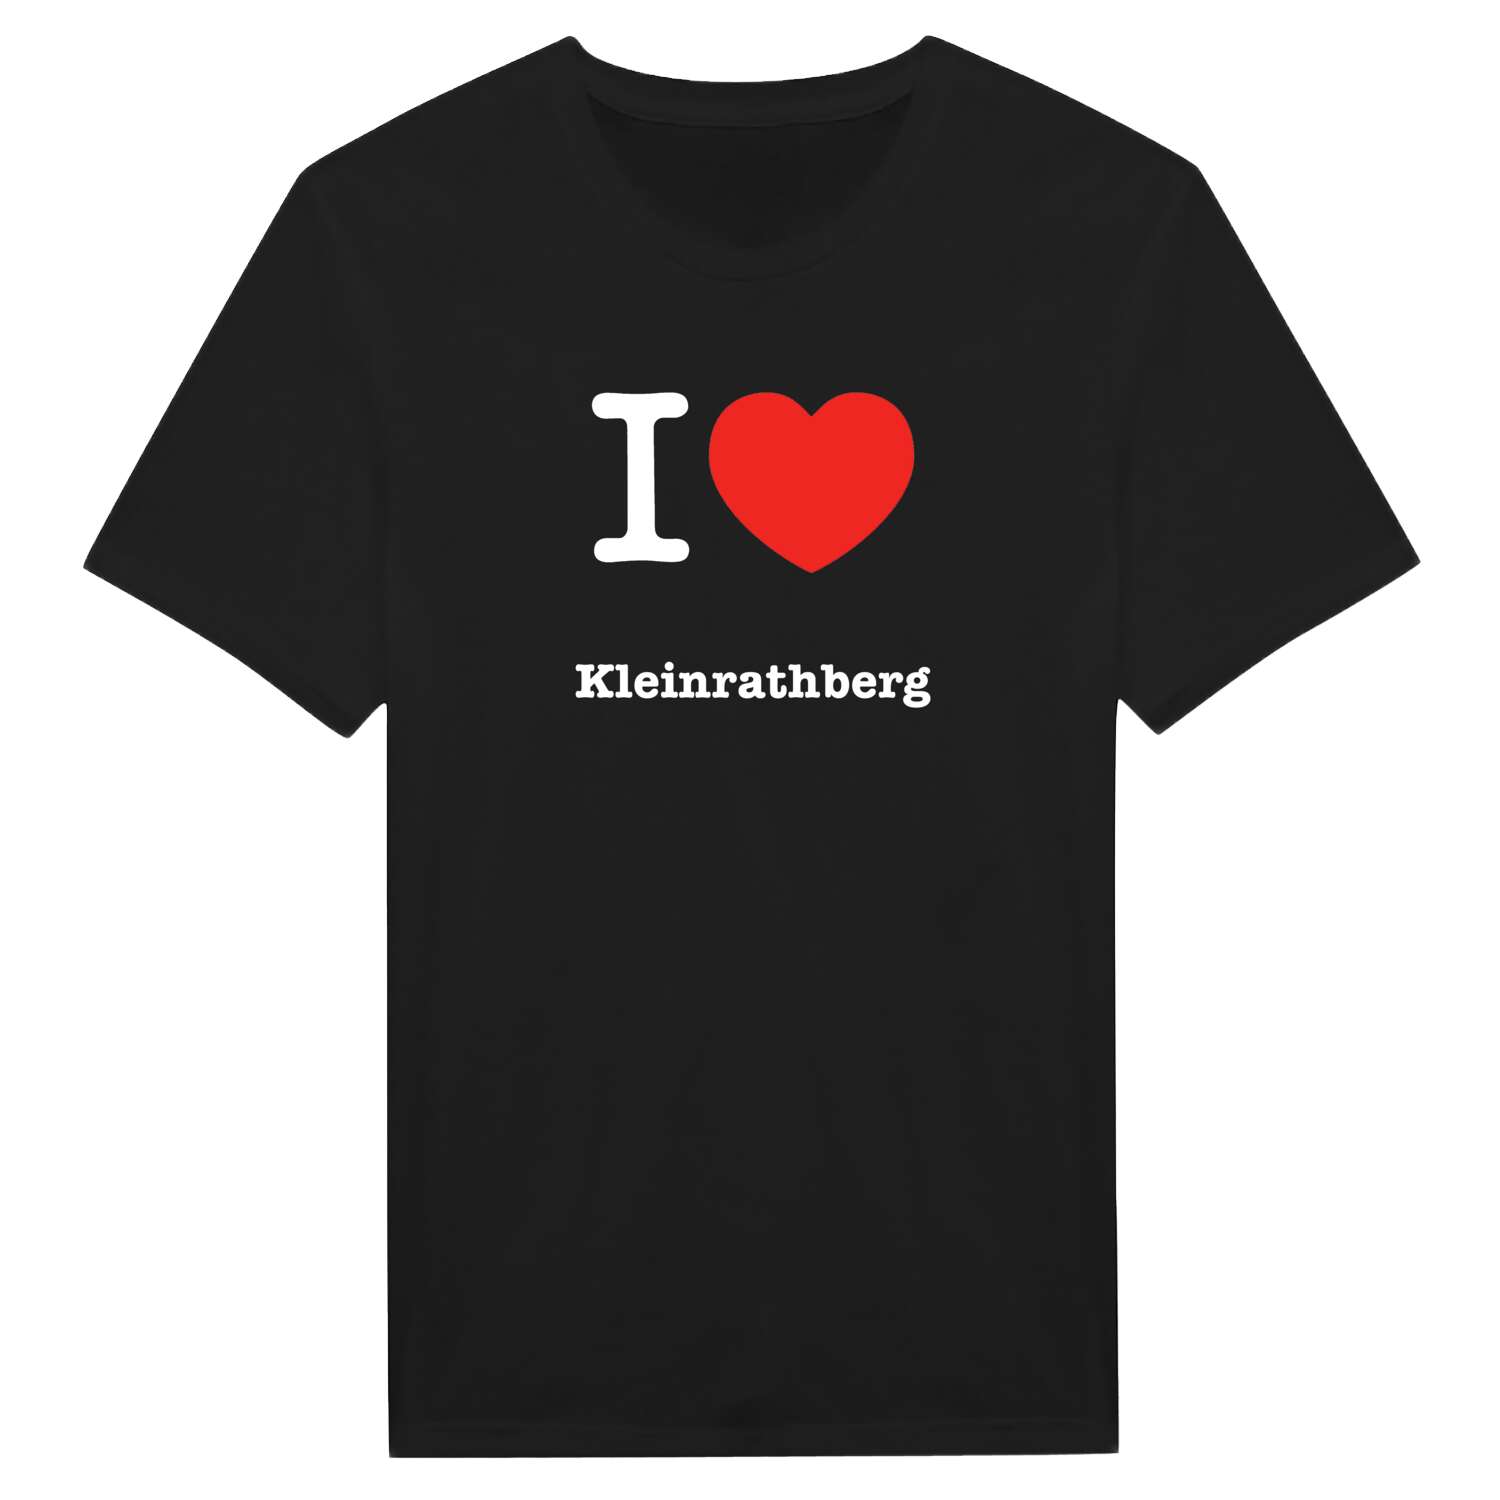 Kleinrathberg T-Shirt »I love«